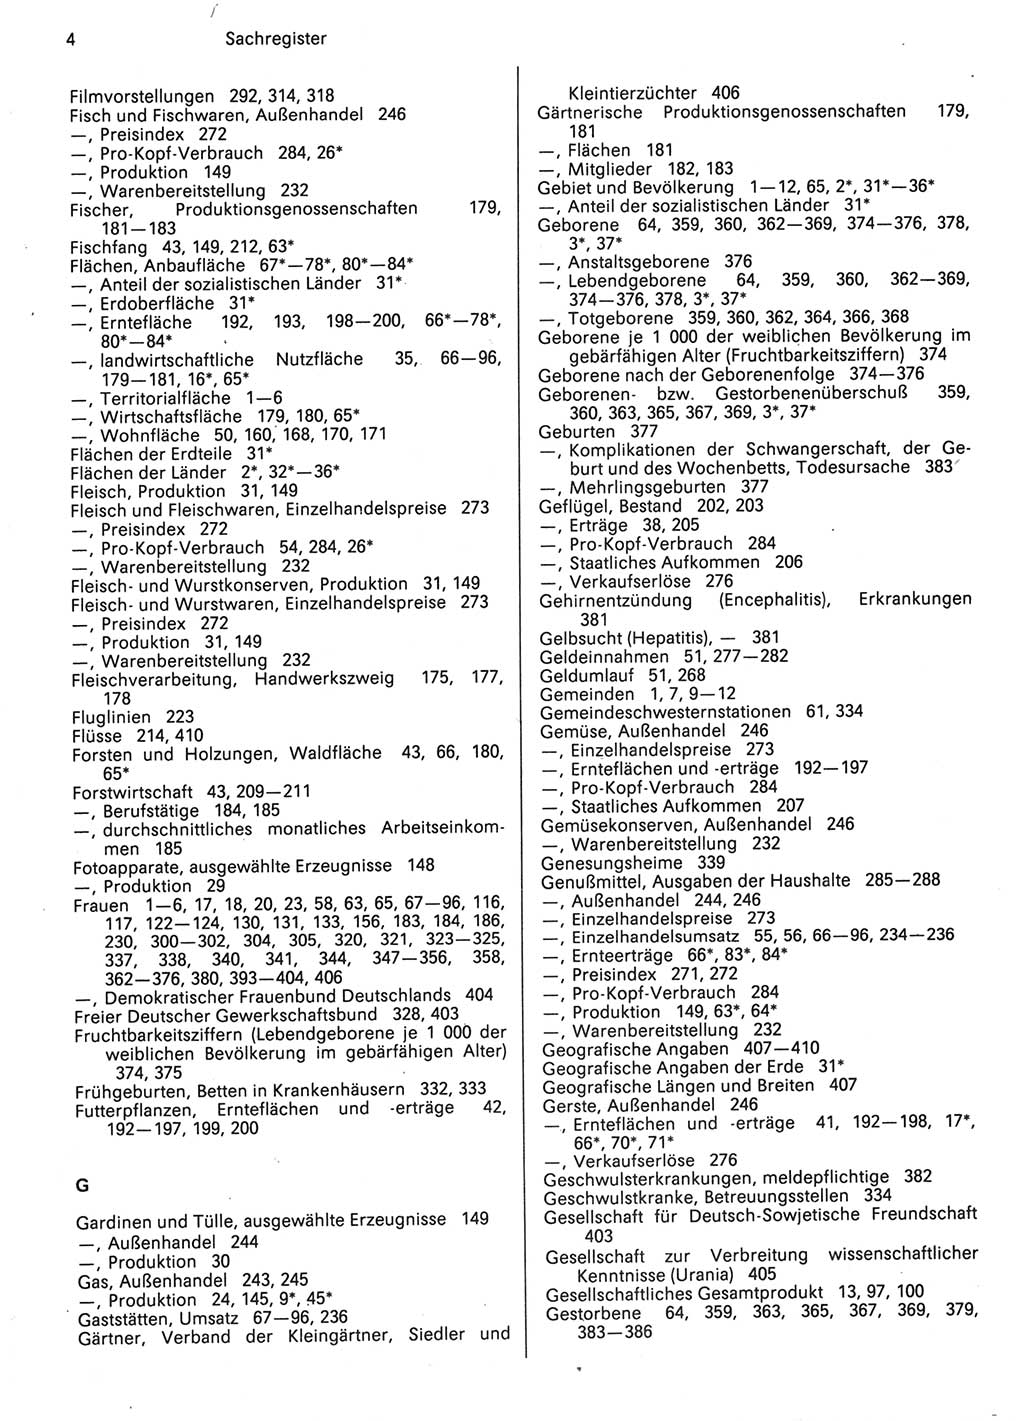 Statistisches Jahrbuch der Deutschen Demokratischen Republik (DDR) 1987, Seite 4 (Stat. Jb. DDR 1987, S. 4)